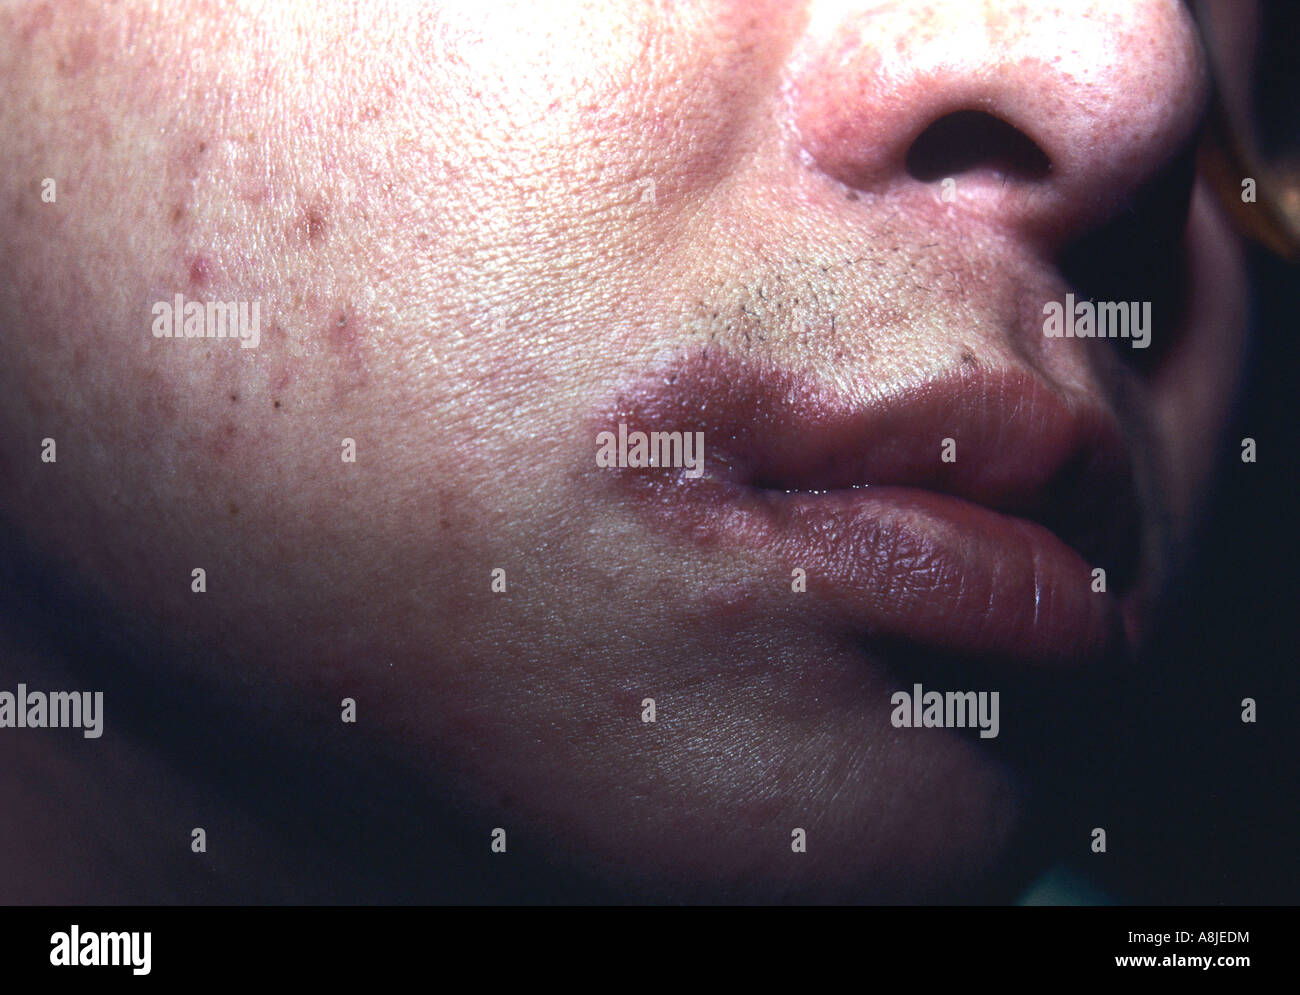 La dermatite da contatto sulle labbra. Eczematose Foto Stock